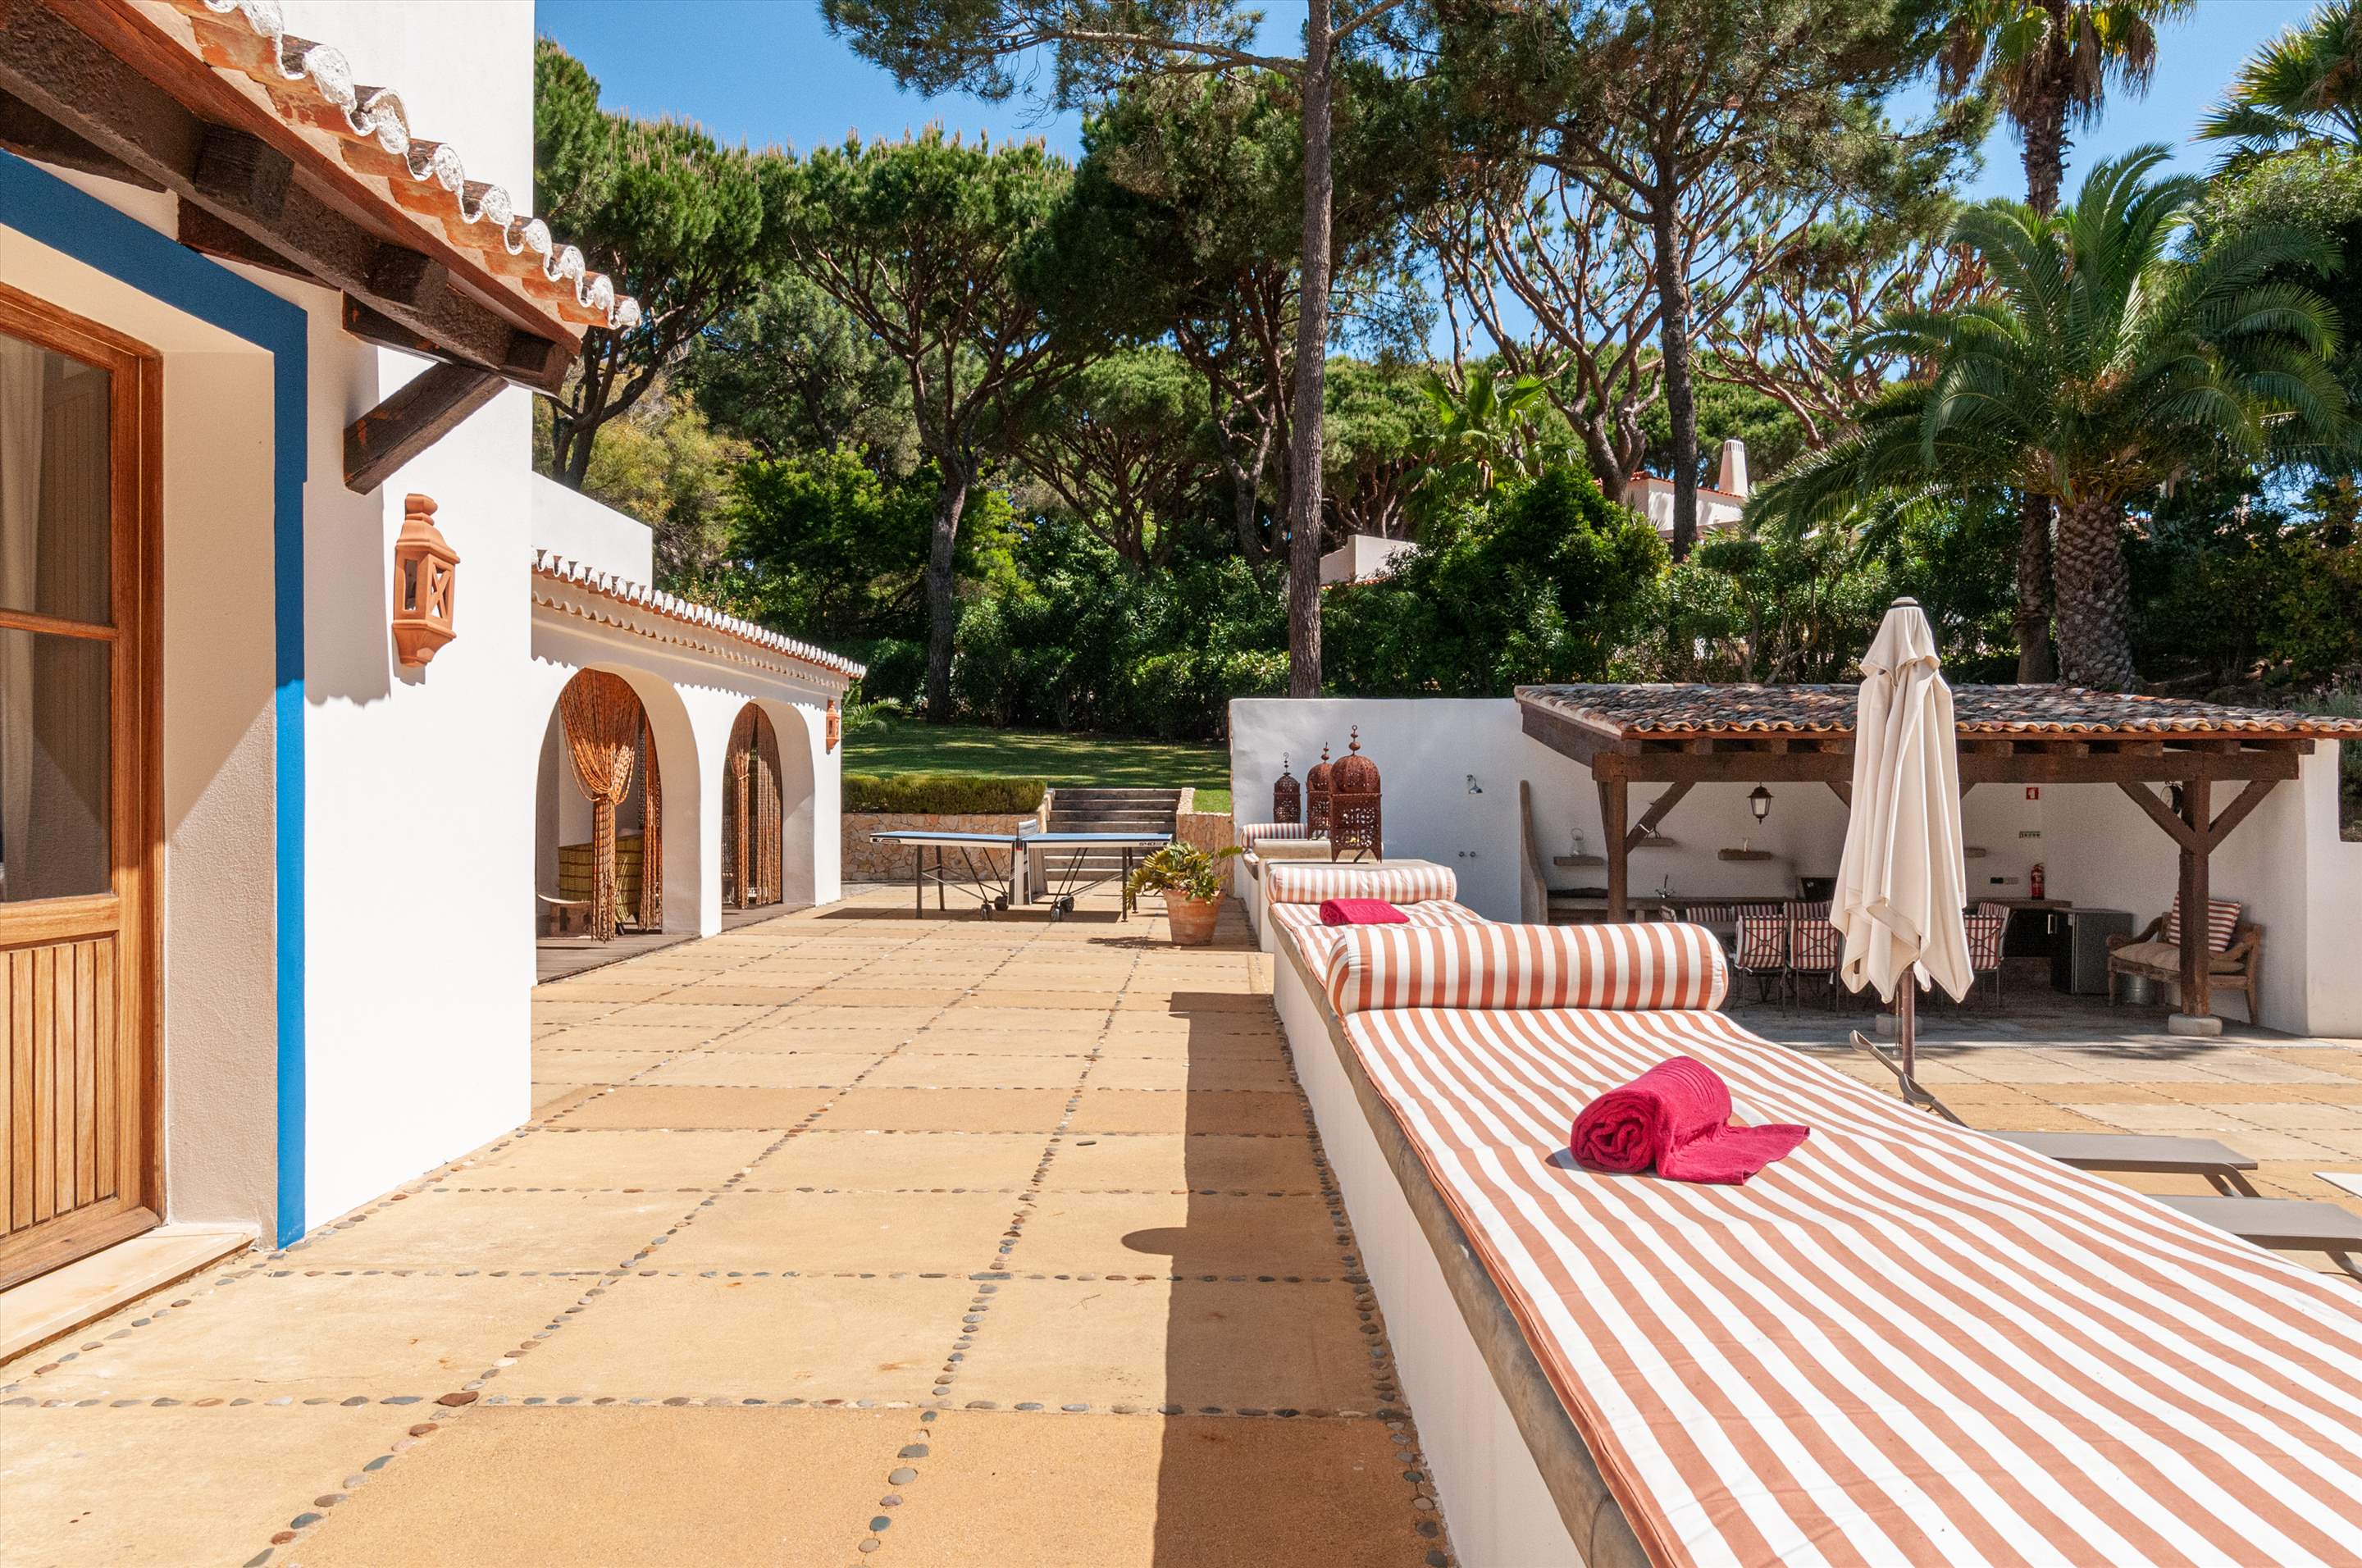 Villa Cristofina, 5 Bedroom, 5 bedroom villa in Vale do Lobo, Algarve Photo #9